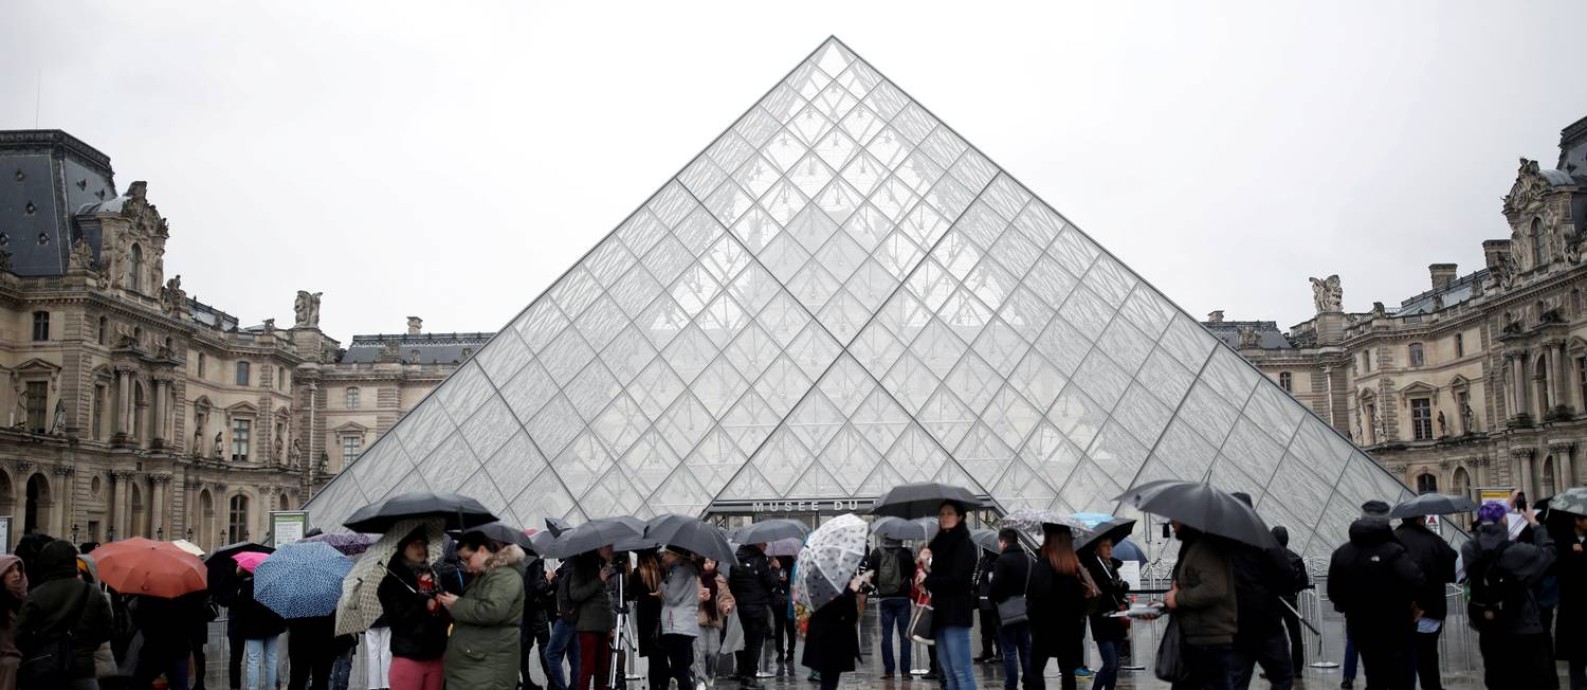 Louvre de portas fechadas: governo francês decidiu restringir aglomerações públicas Foto: Benoit Tessier / REUTERS